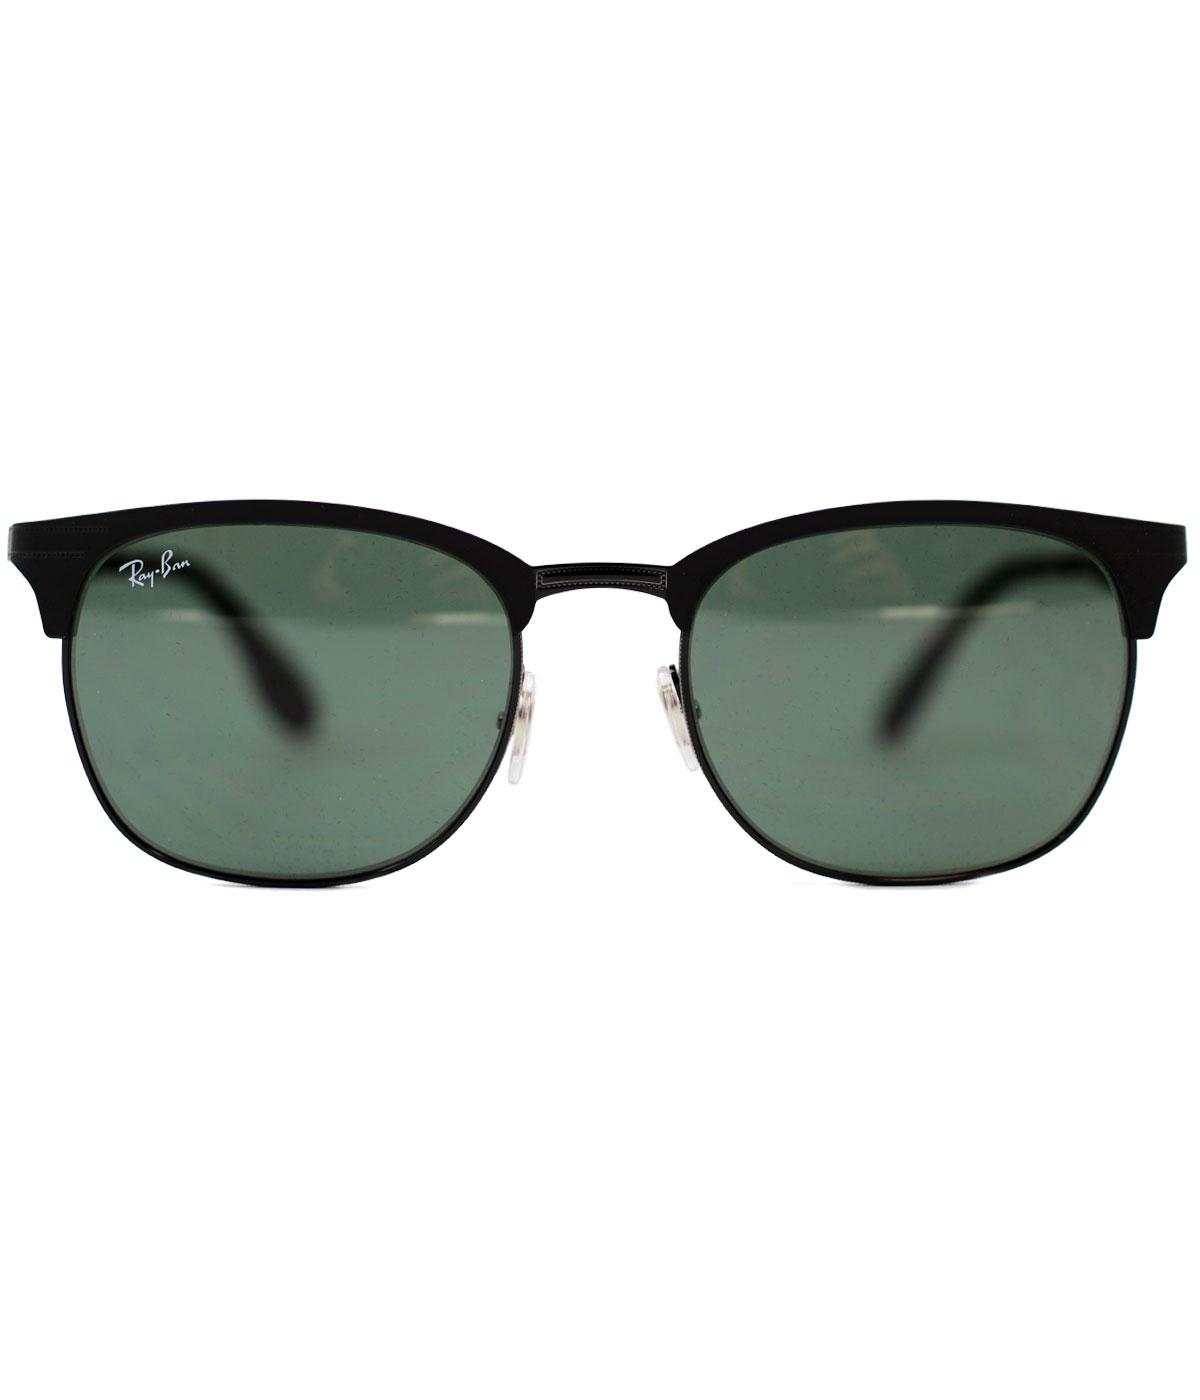 ray ban thin frame sunglasses